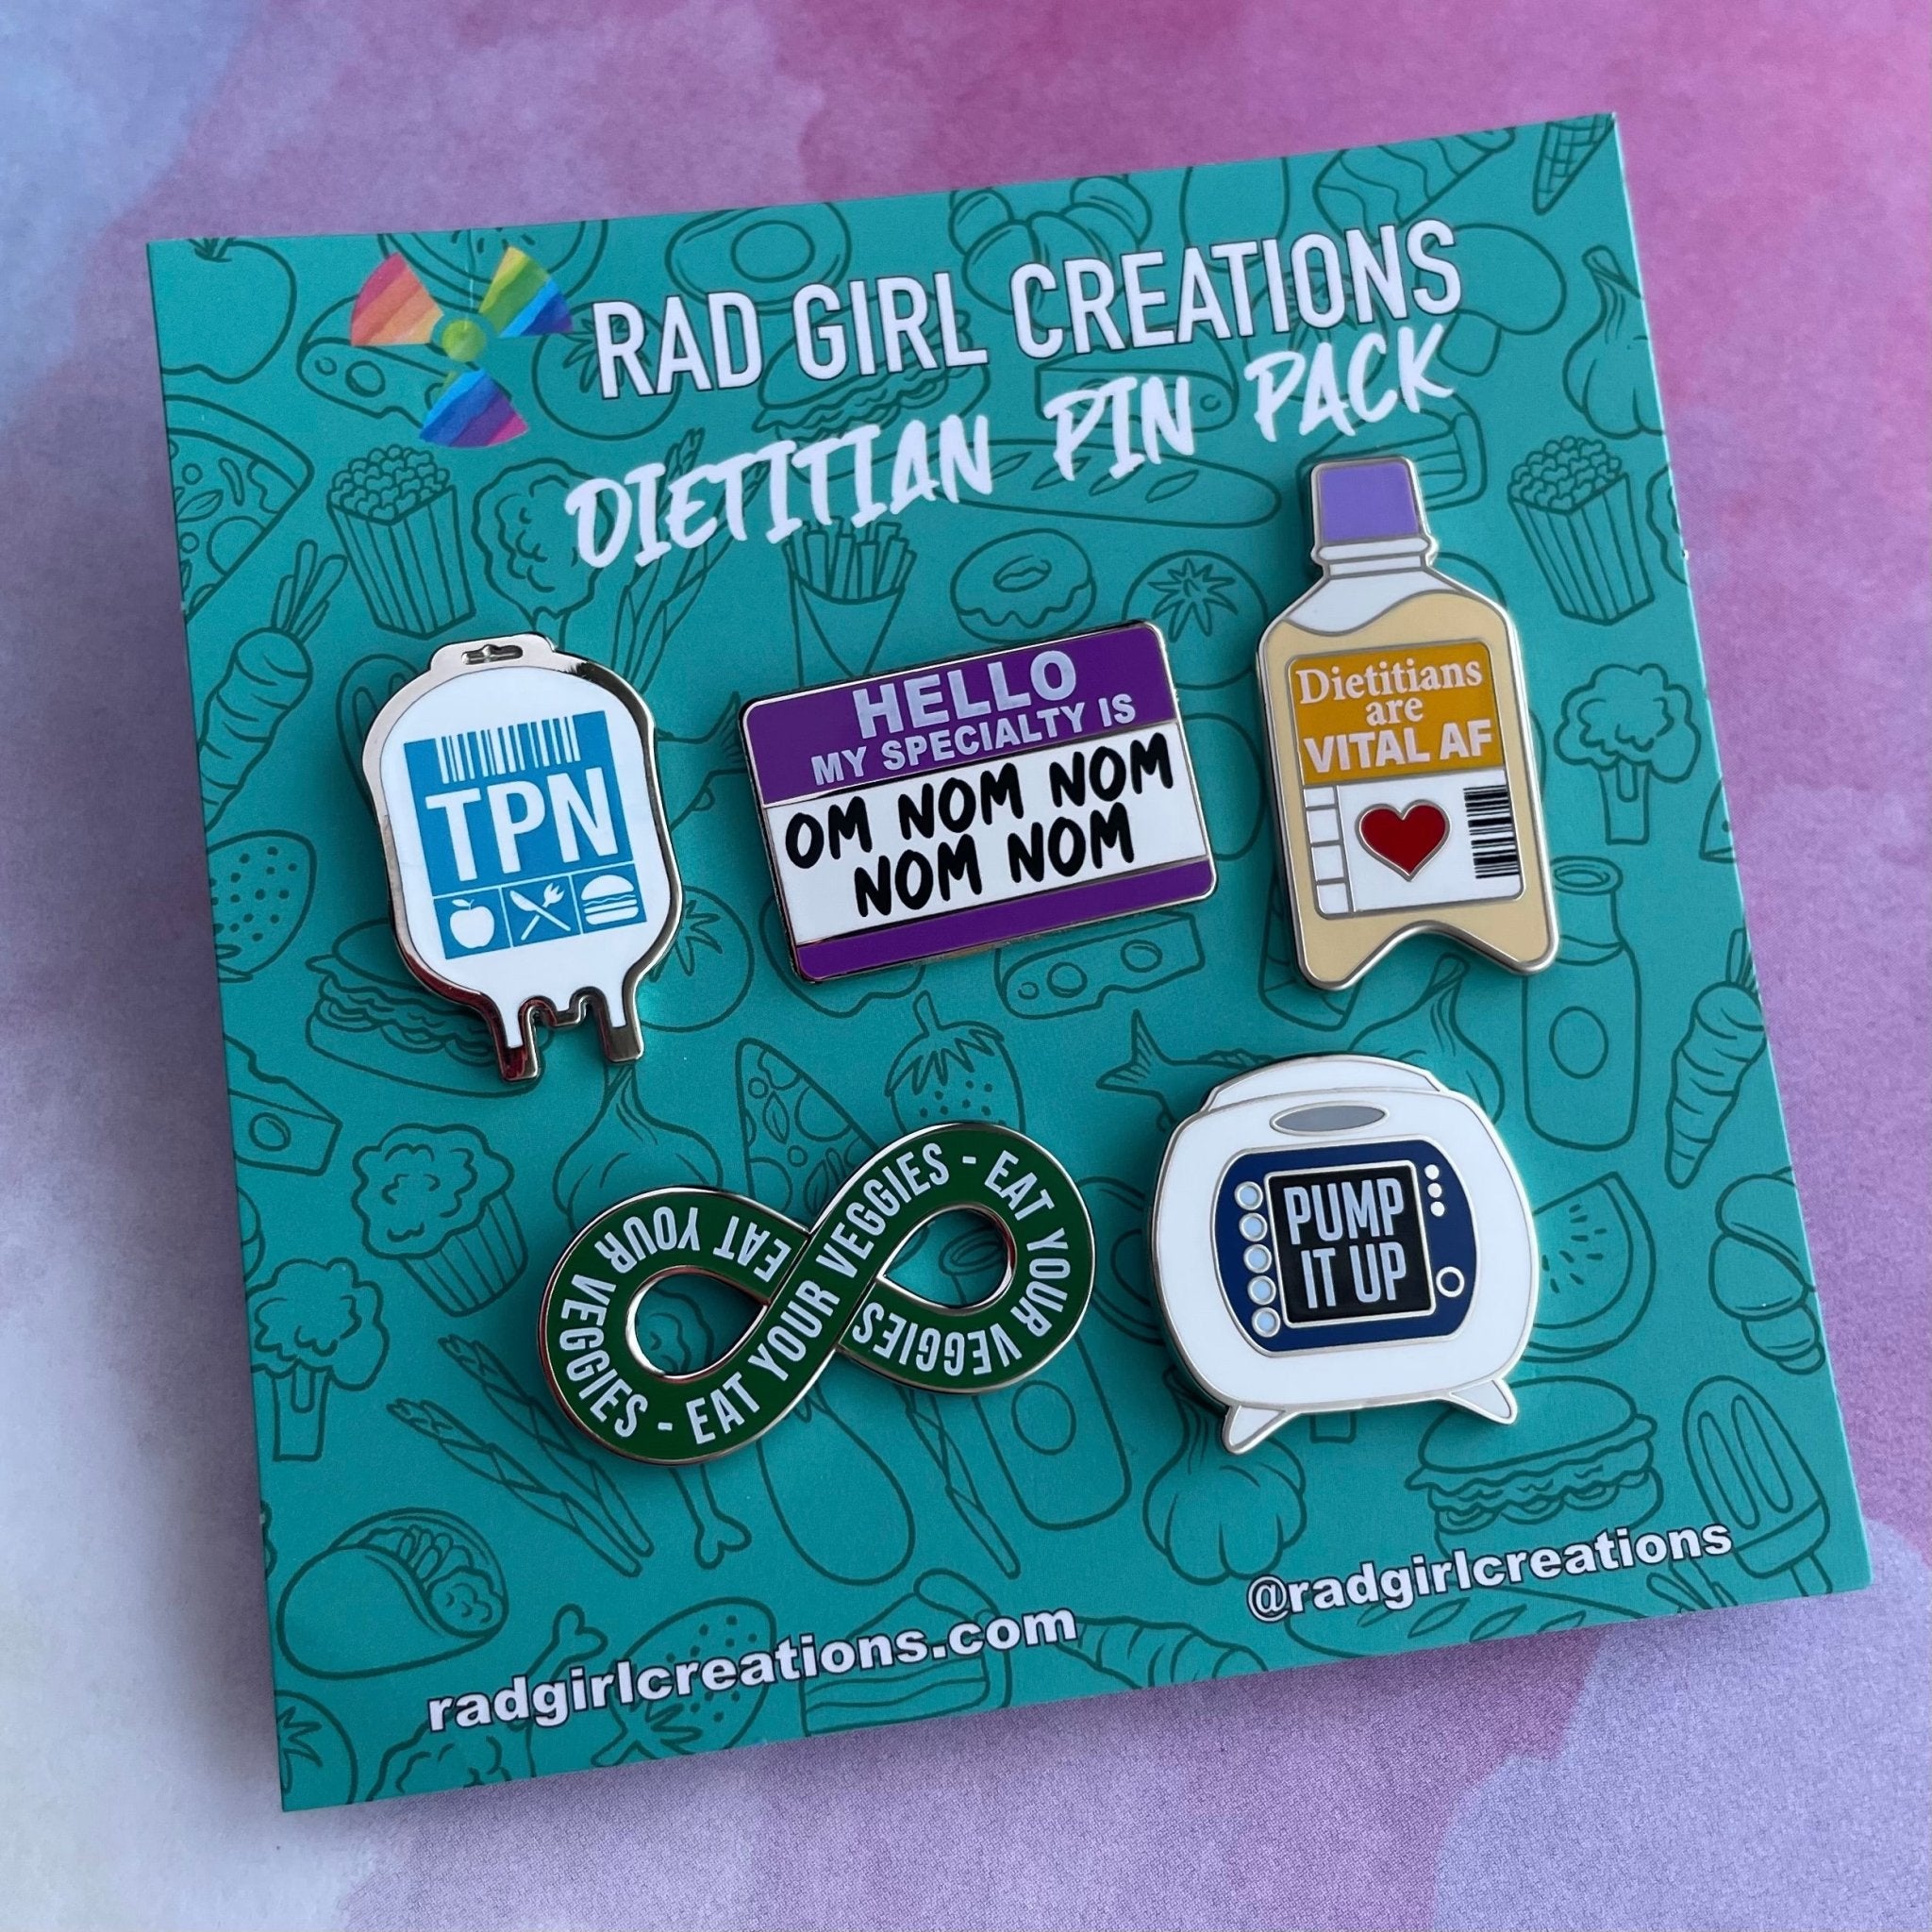 Dietitian Pin Pack - Rad Girl Creations - Medical Enamel Pin